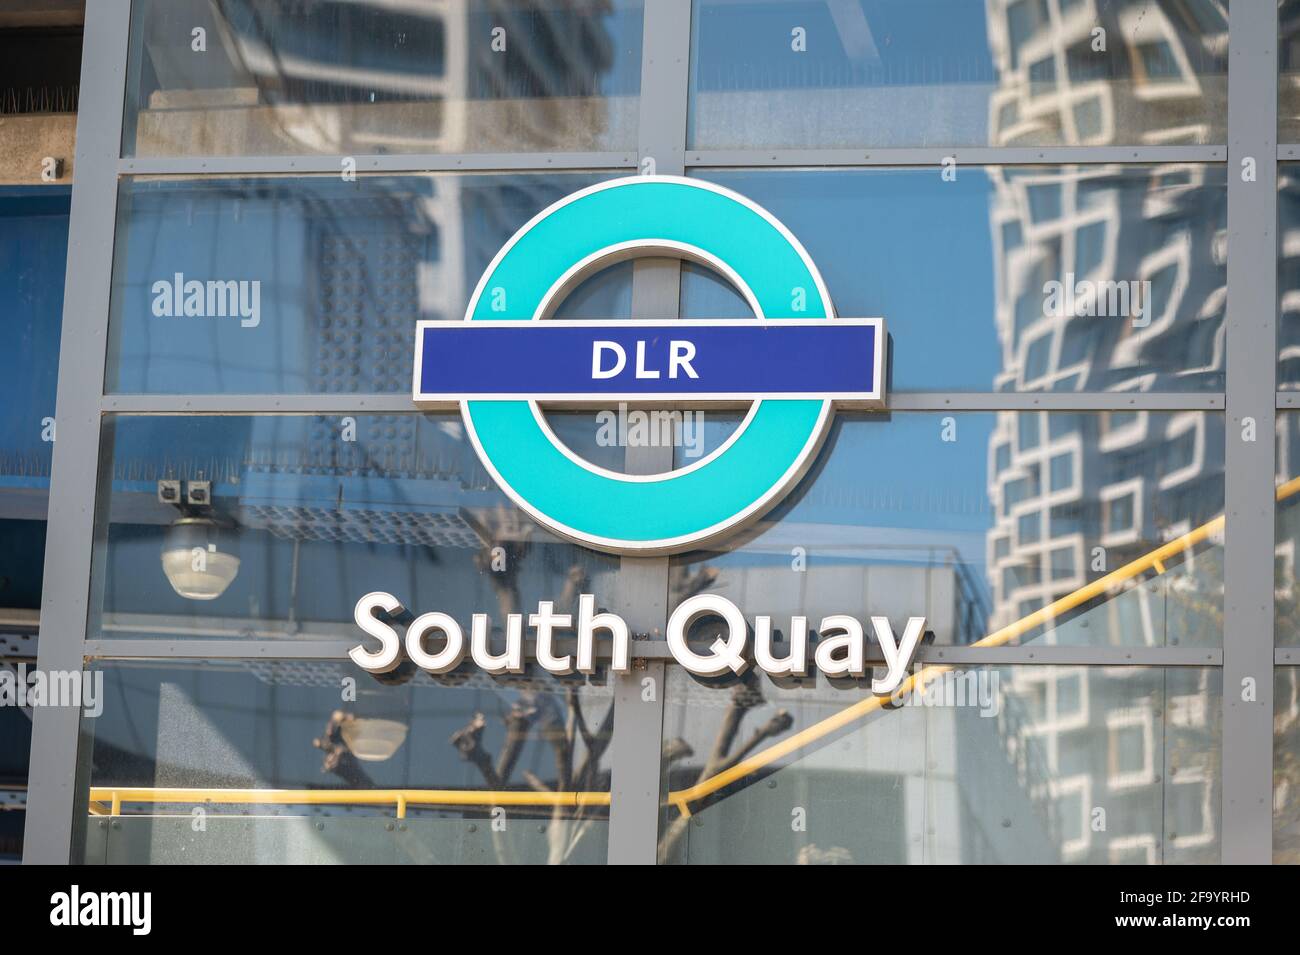 Stazione di South Quay sulla linea metropolitana DLR, Londra Foto Stock